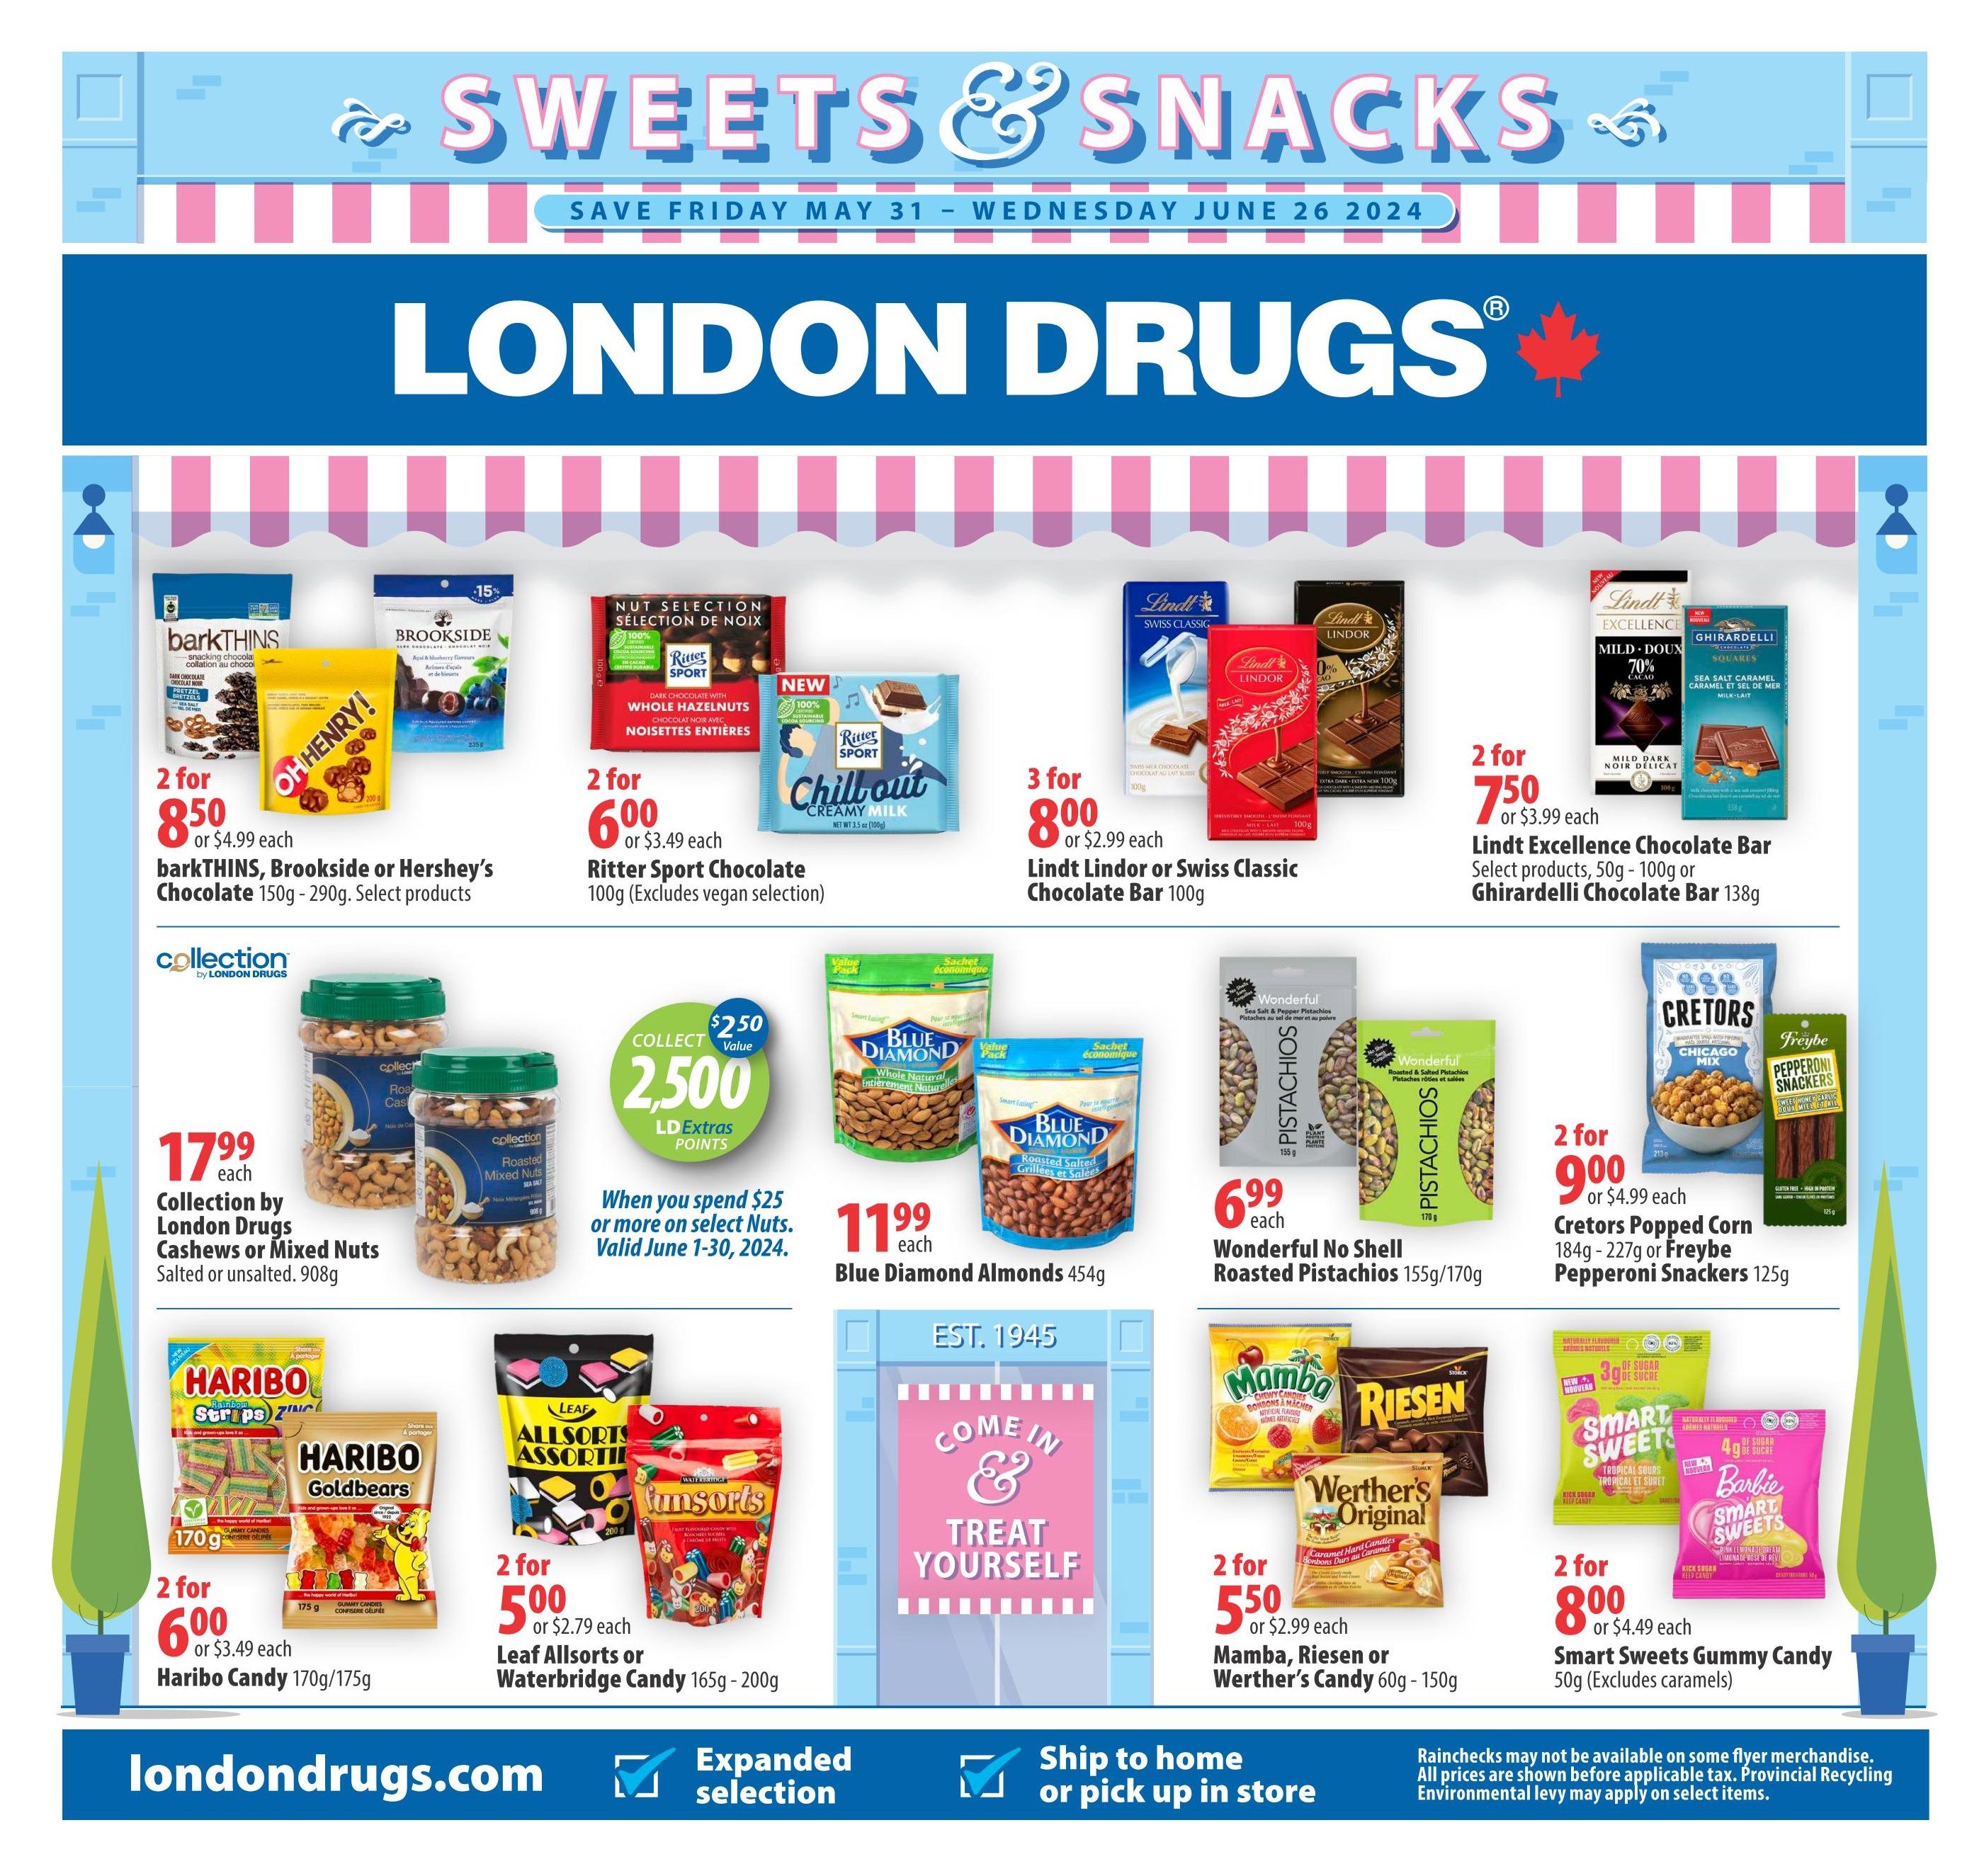 London Drugs - Sweets & Snacks